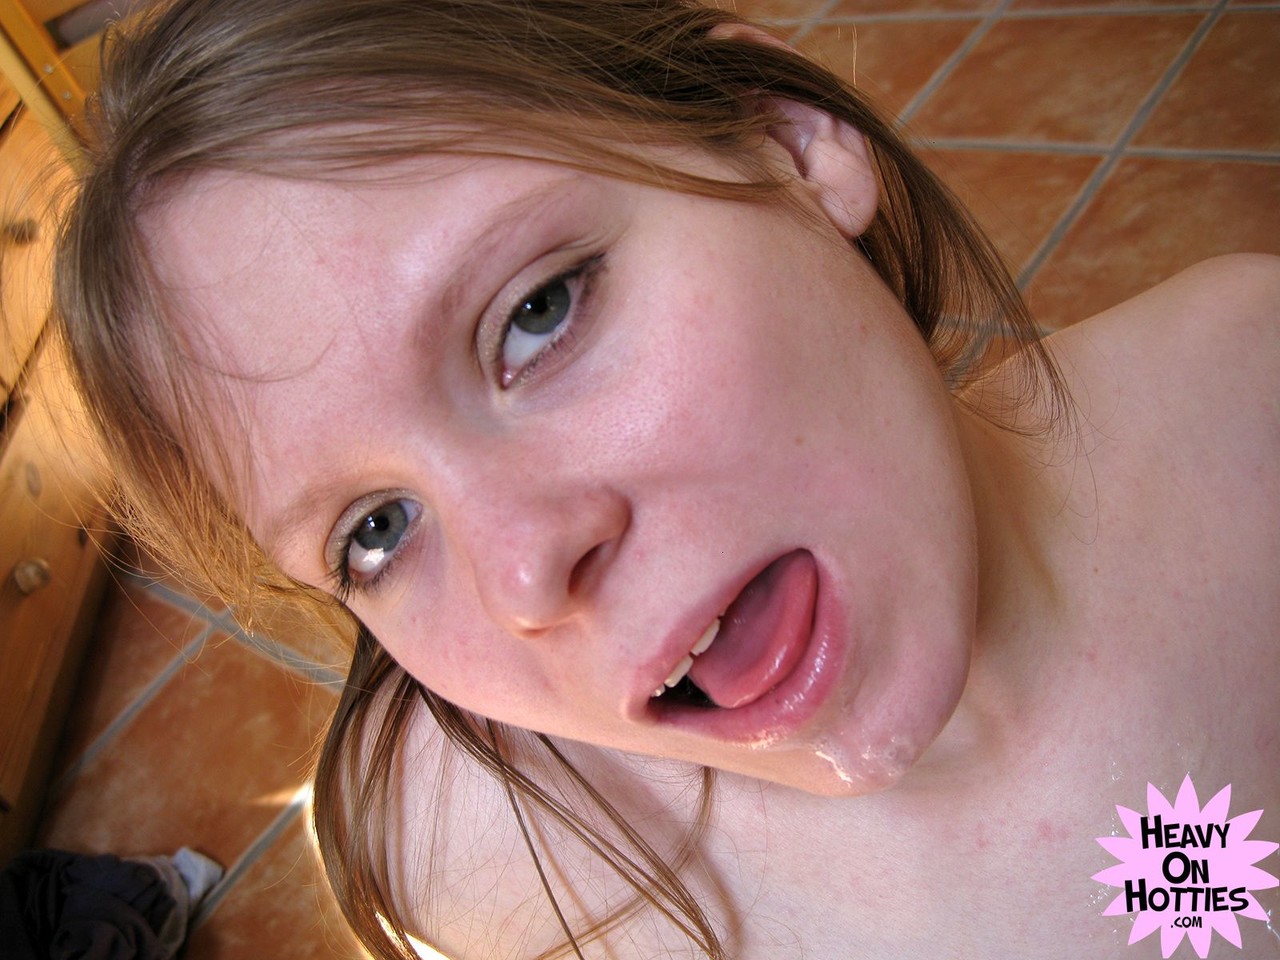 Amateur girl fondles her big natural tits during a POV blowjob zdjęcie porno #424293092 | Heavy On Hotties Pics, Caroline, Close Up, mobilne porno